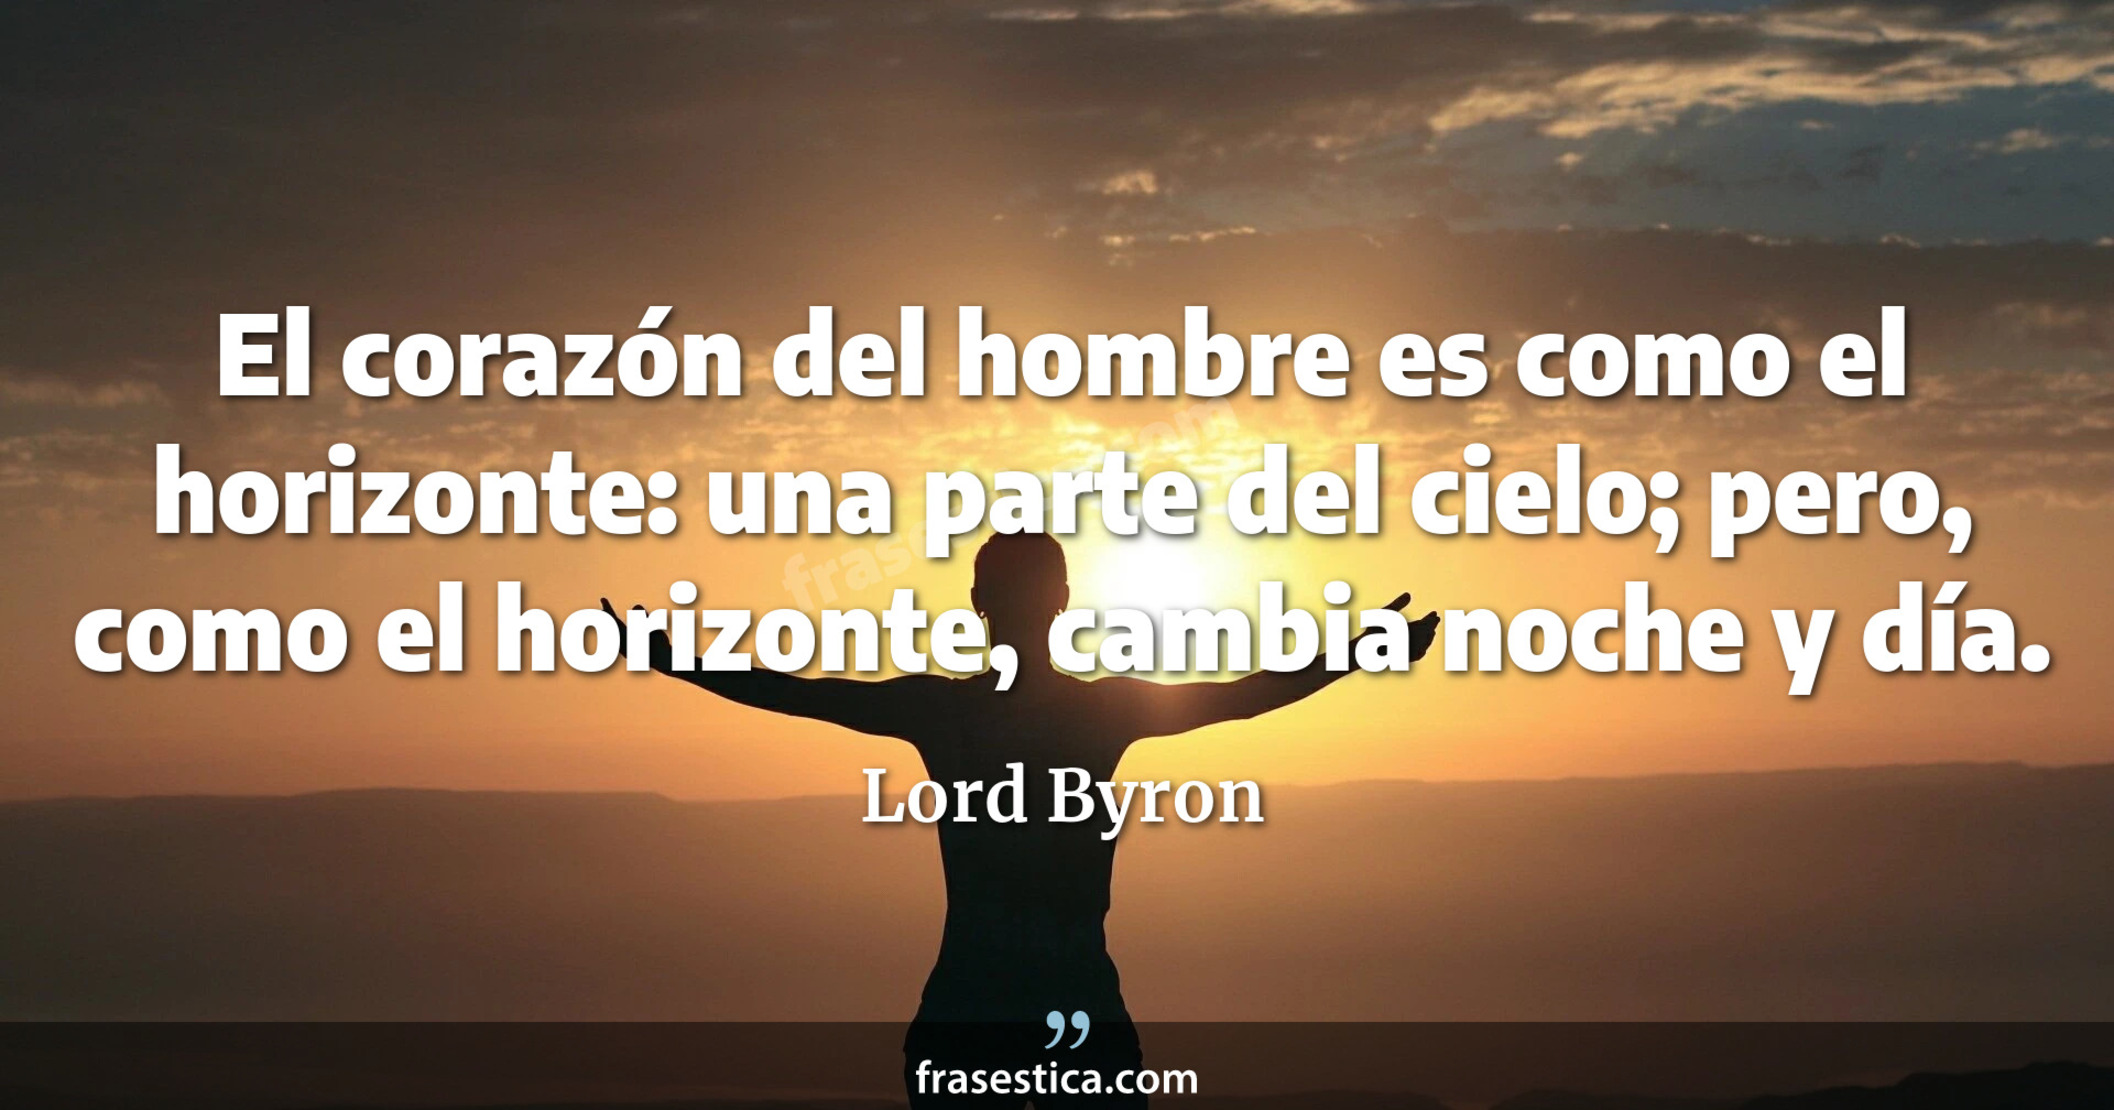 El corazón del hombre es como el horizonte: una parte del cielo; pero, como el horizonte, cambia noche y día. - Lord Byron